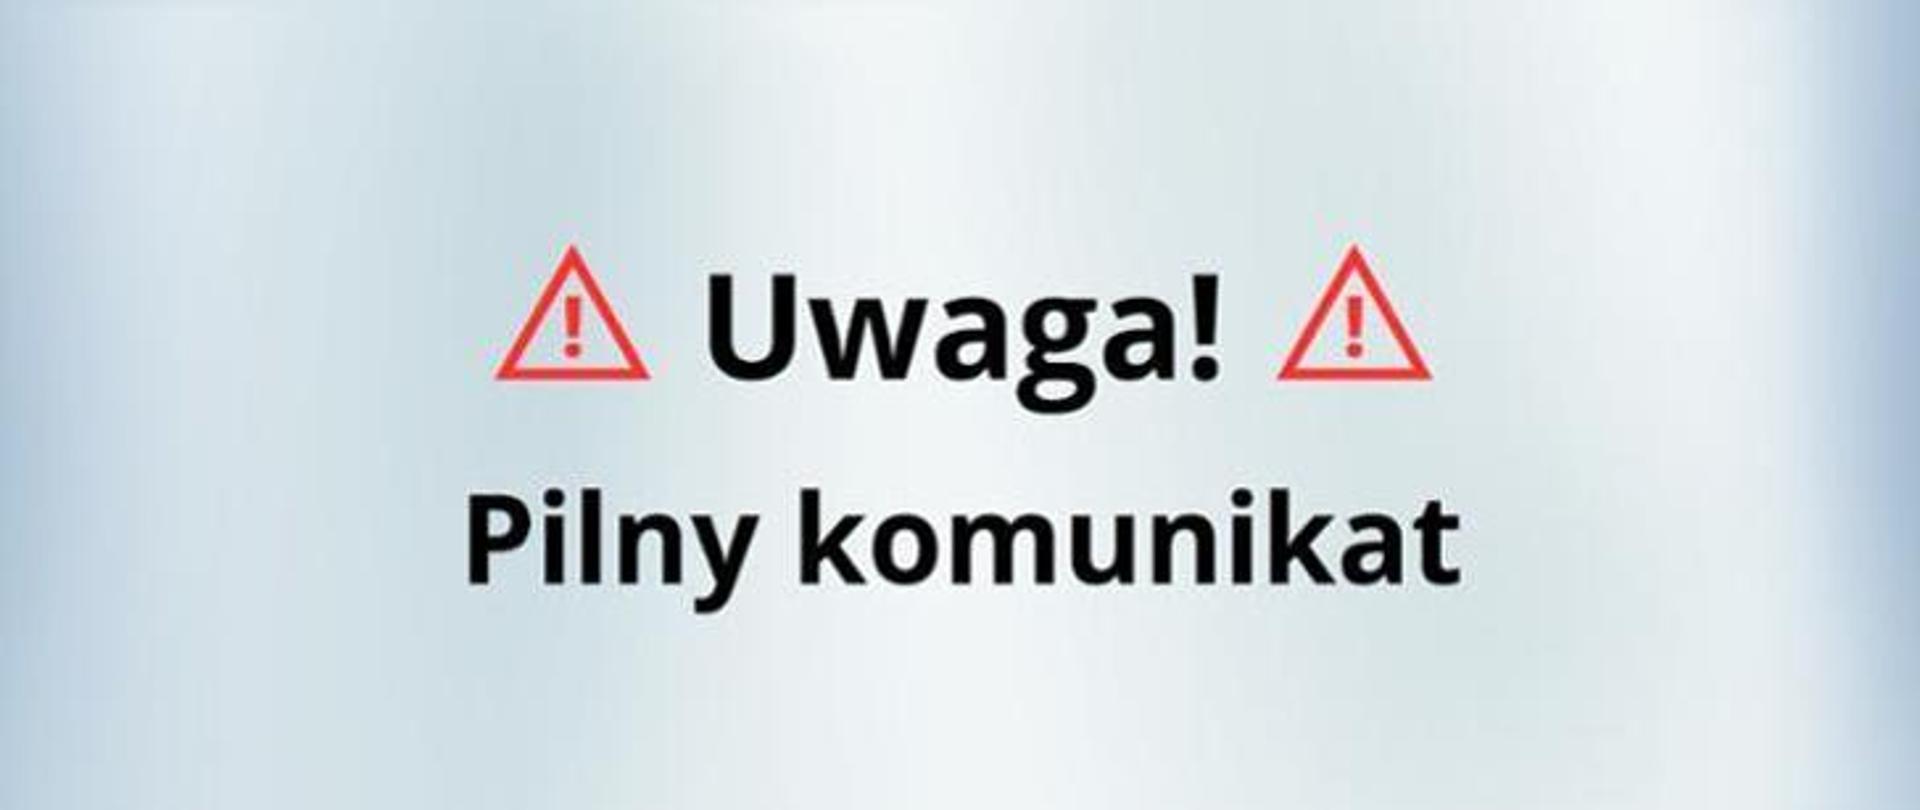 Uwaga_pilny_komunikat-napis na szarym tle z ze znakami ostrzegawczymi